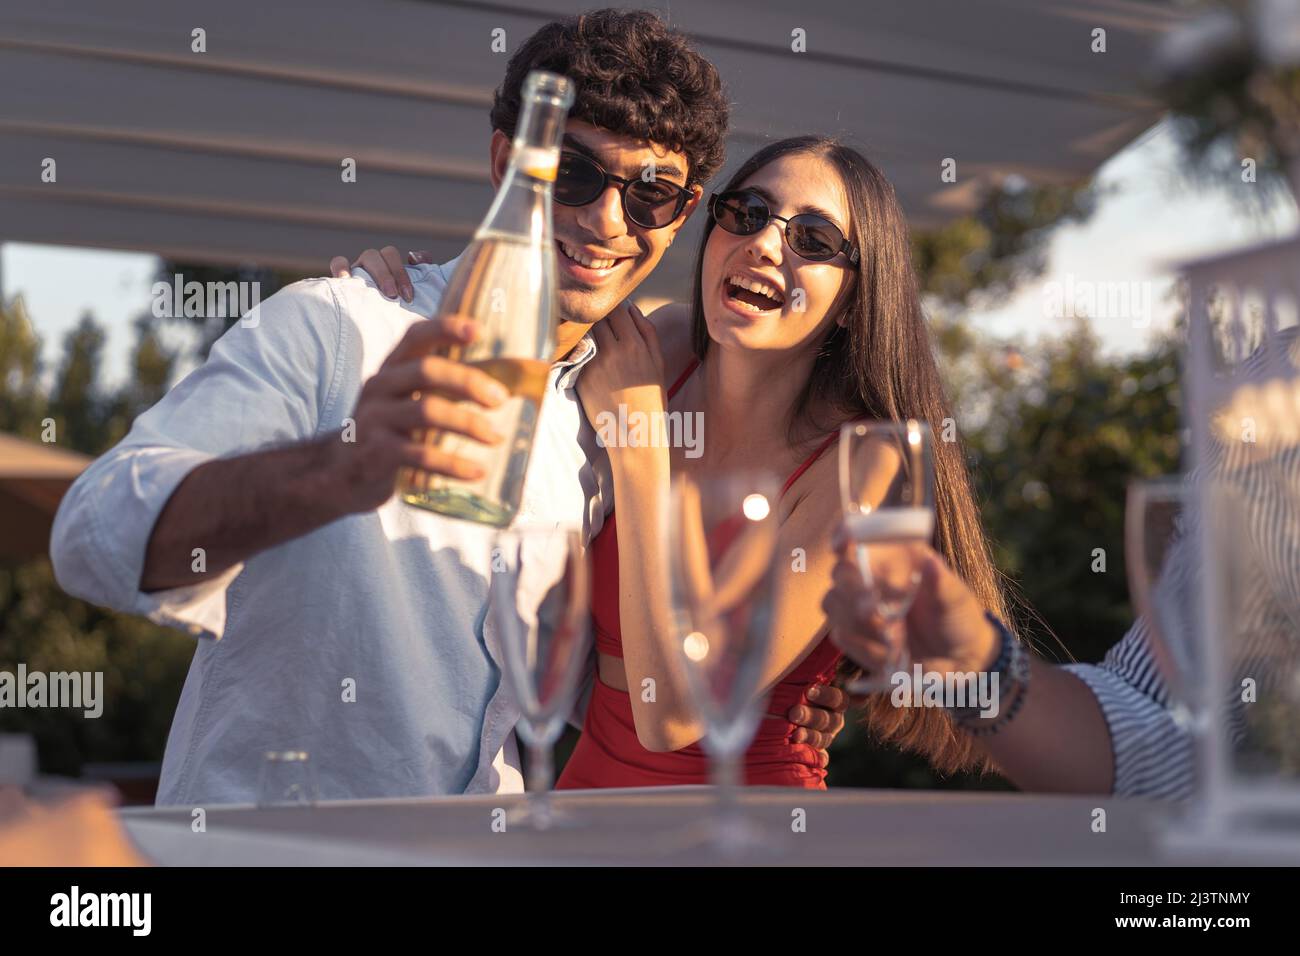 Couple de jeunes engagés qui versent du champagne dans des flûtes célébrant leur amour - amis gaies buvant du vin mousseux souriant et du havi Banque D'Images